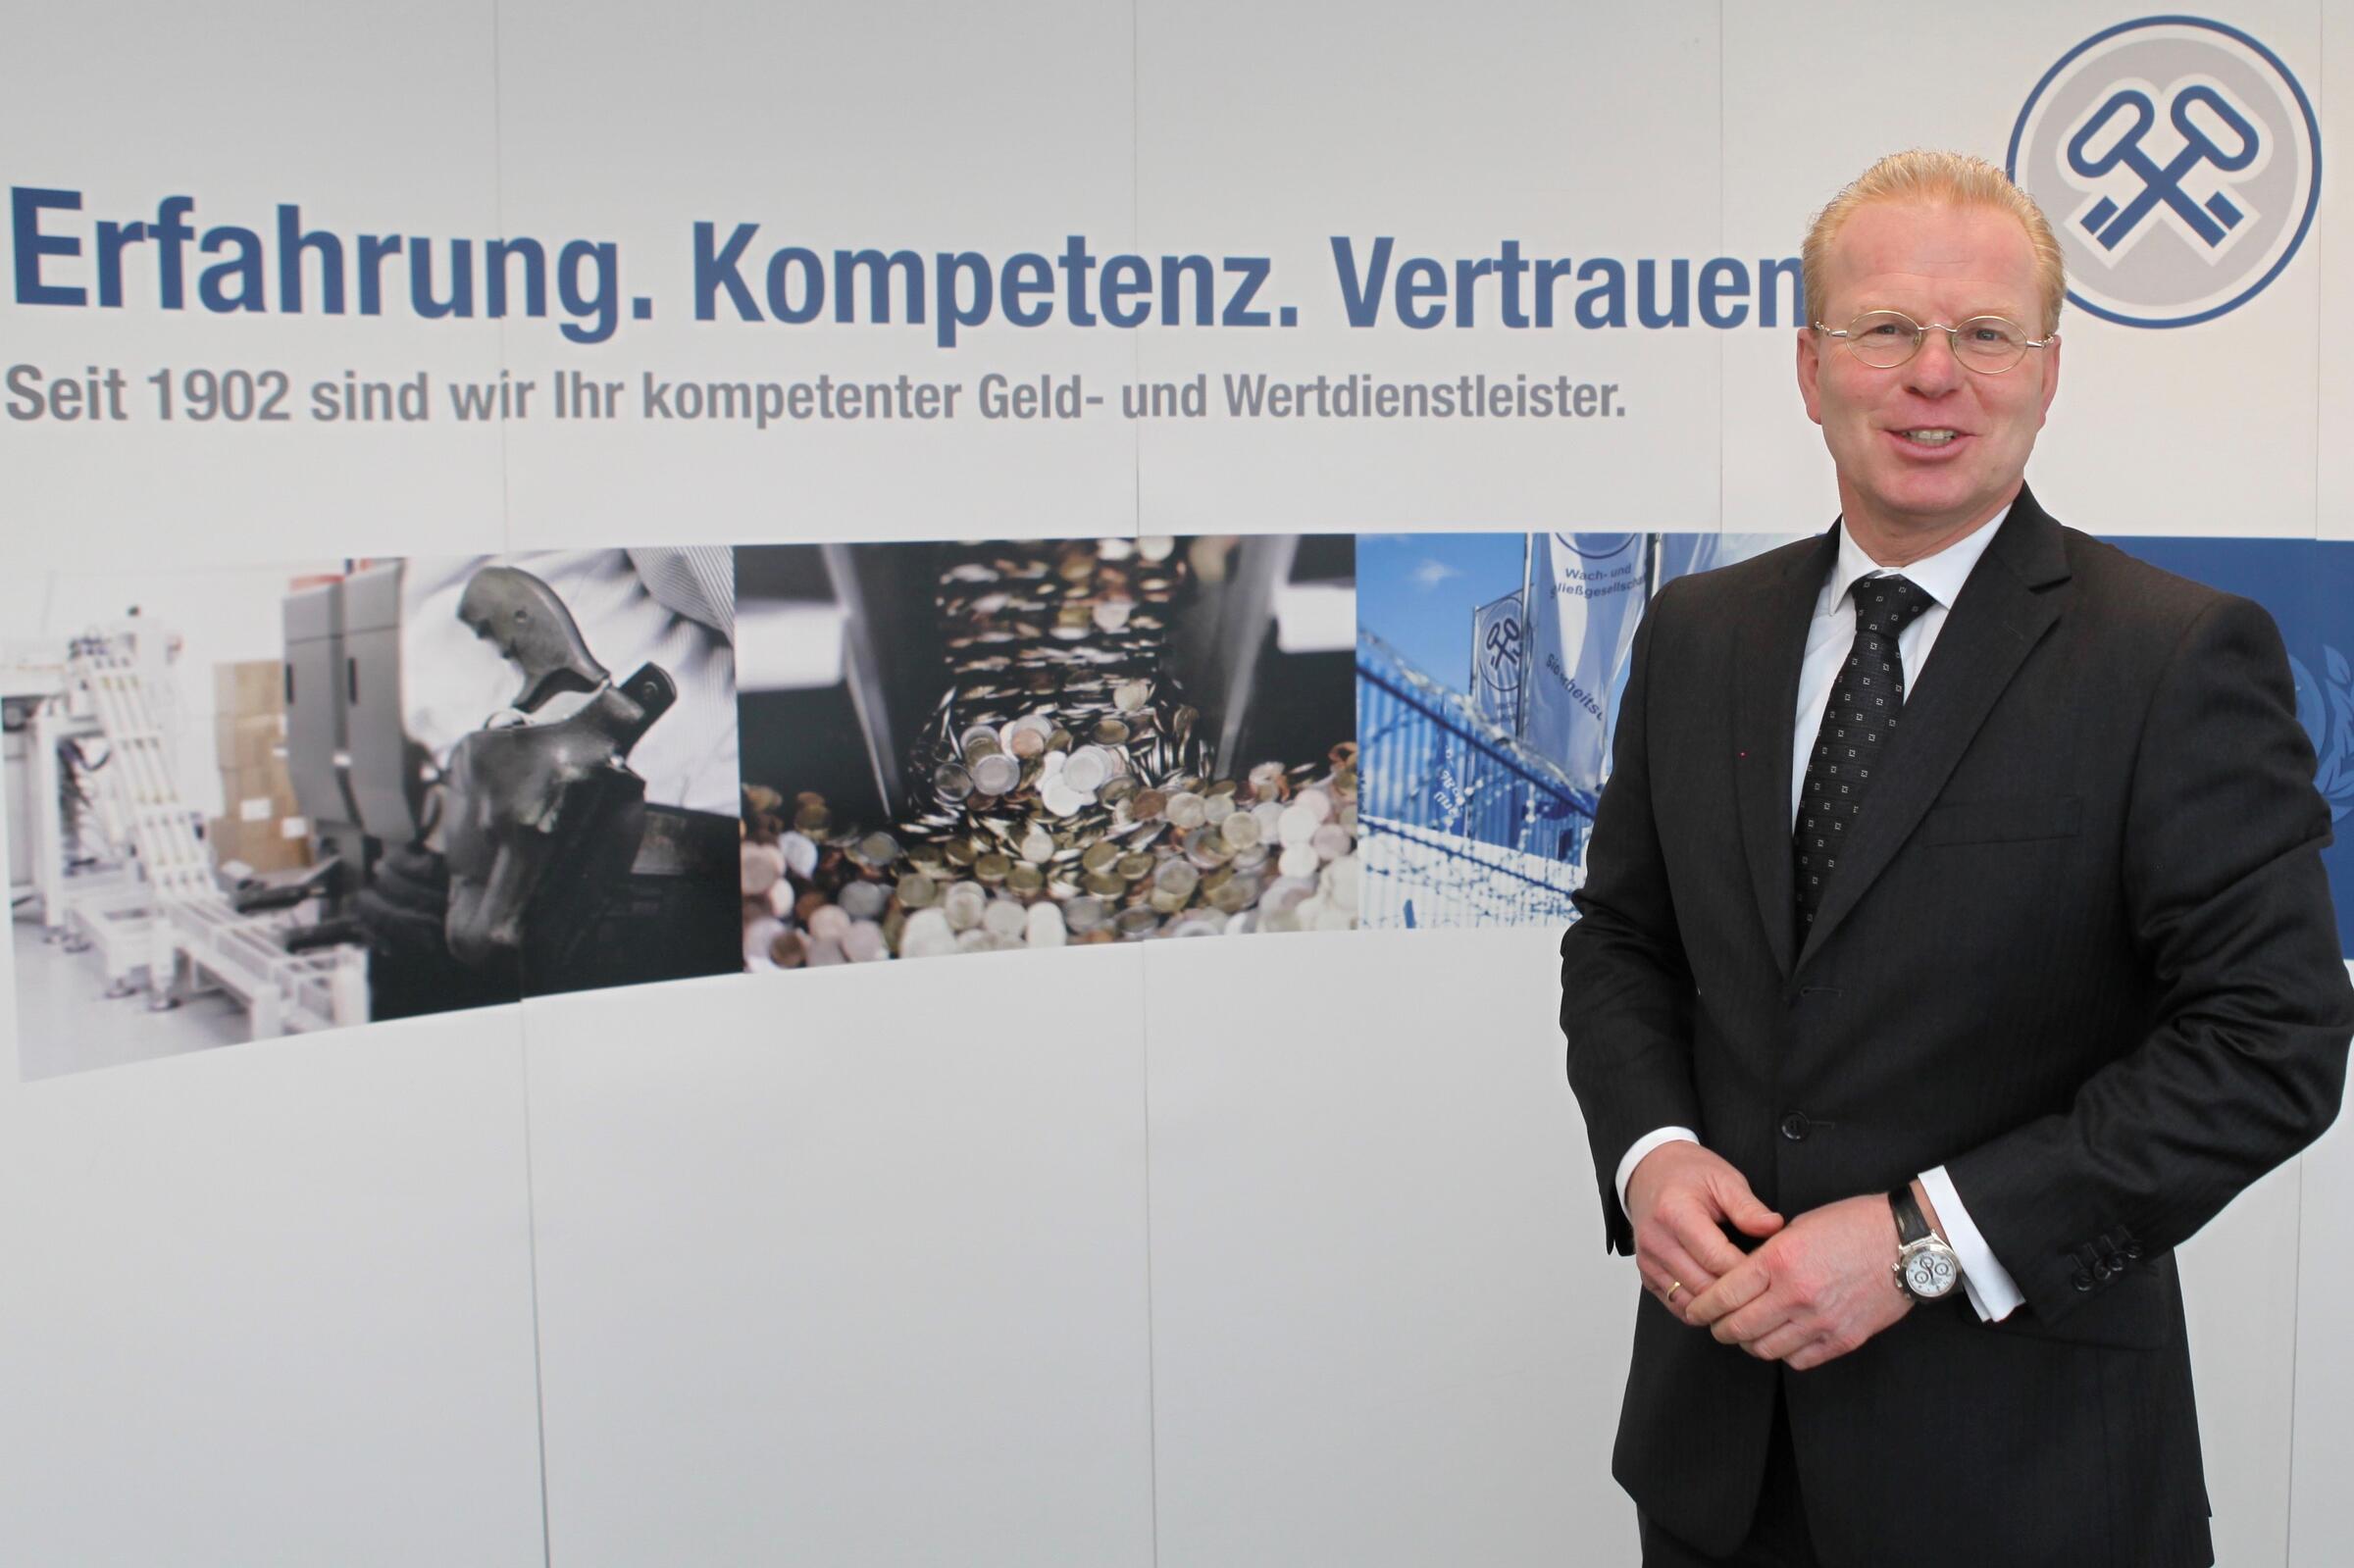 Bernd Herkströter, Geschäftsführer der Wach- und Schließgesellschaft Wuppertal (WSG), freut sich über das 120-jährige Firmenjubiläum.